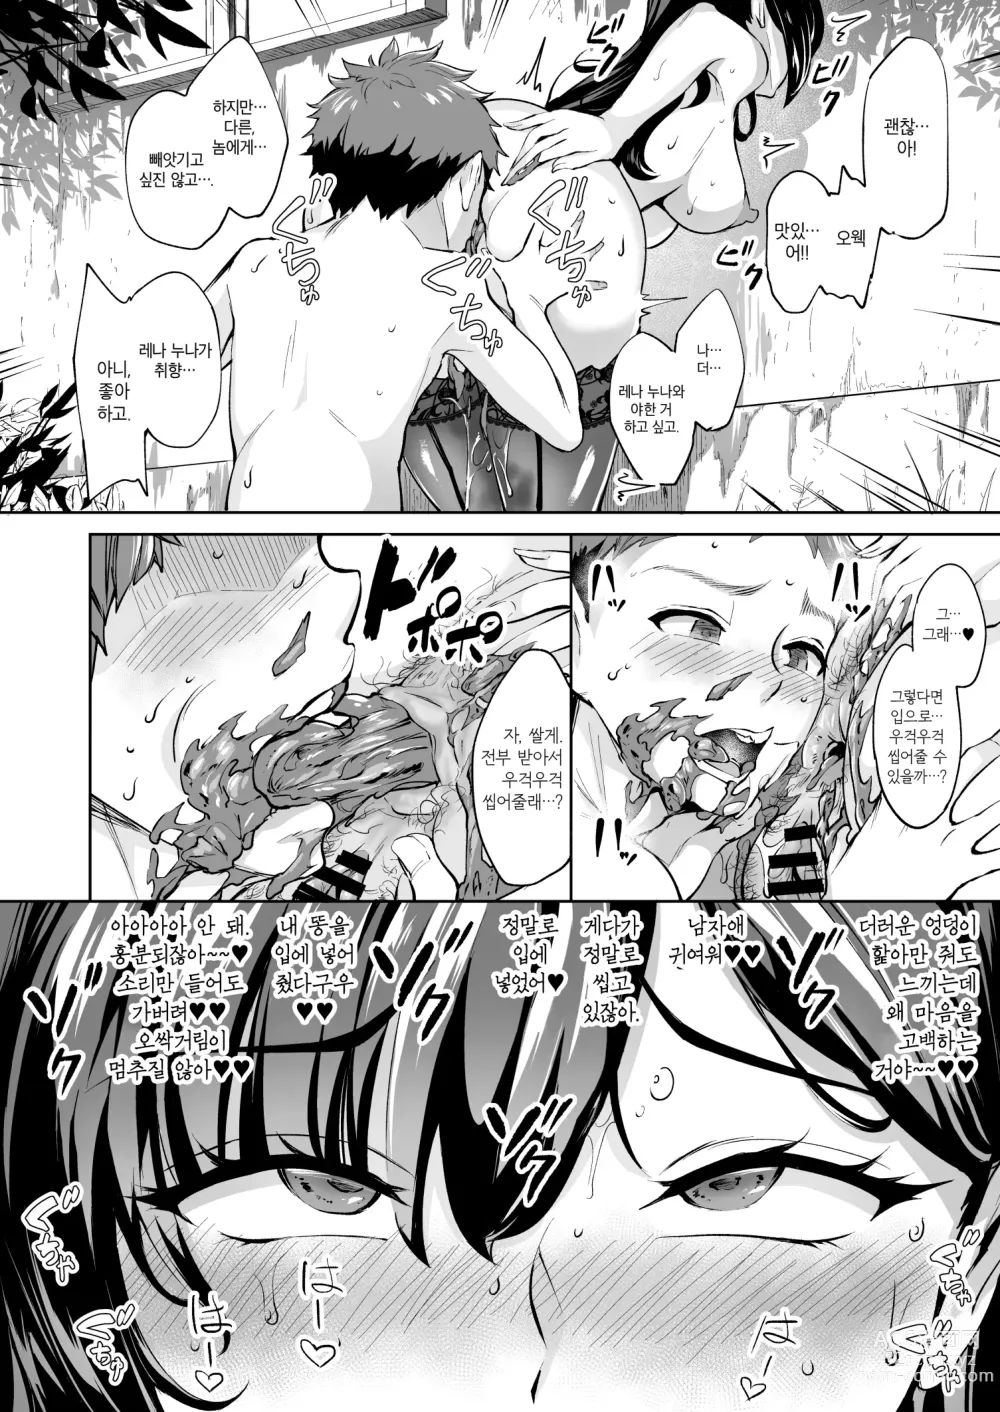 Page 27 of doujinshi 나타난 치녀는 연하킬러인 스카토로 변태였습니다 2